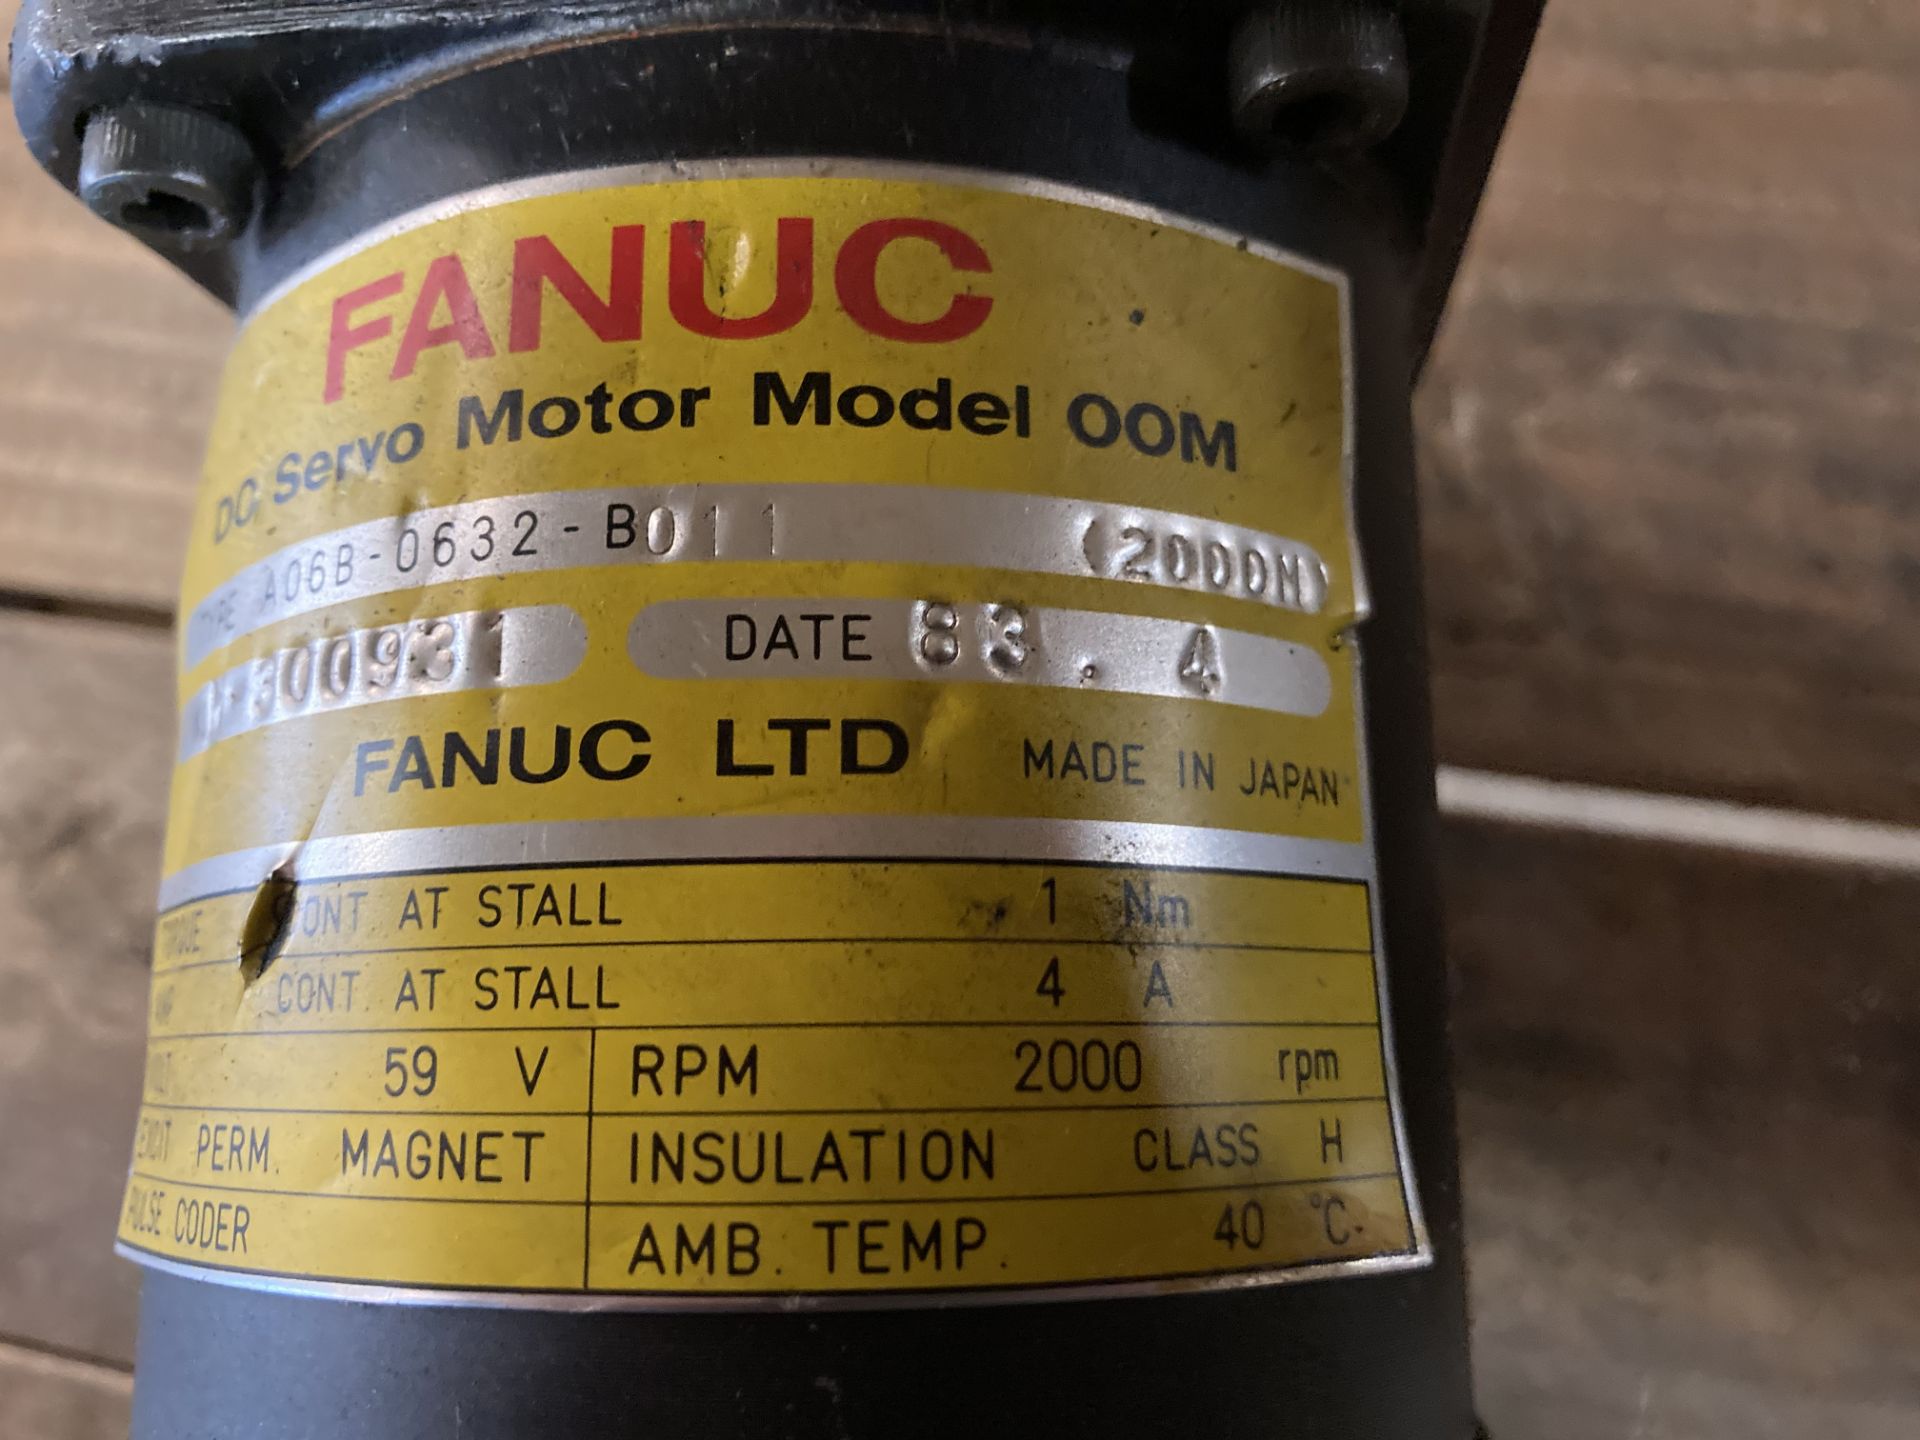 Fanuc DC Servo Motor, M/N: 00M - Image 7 of 7